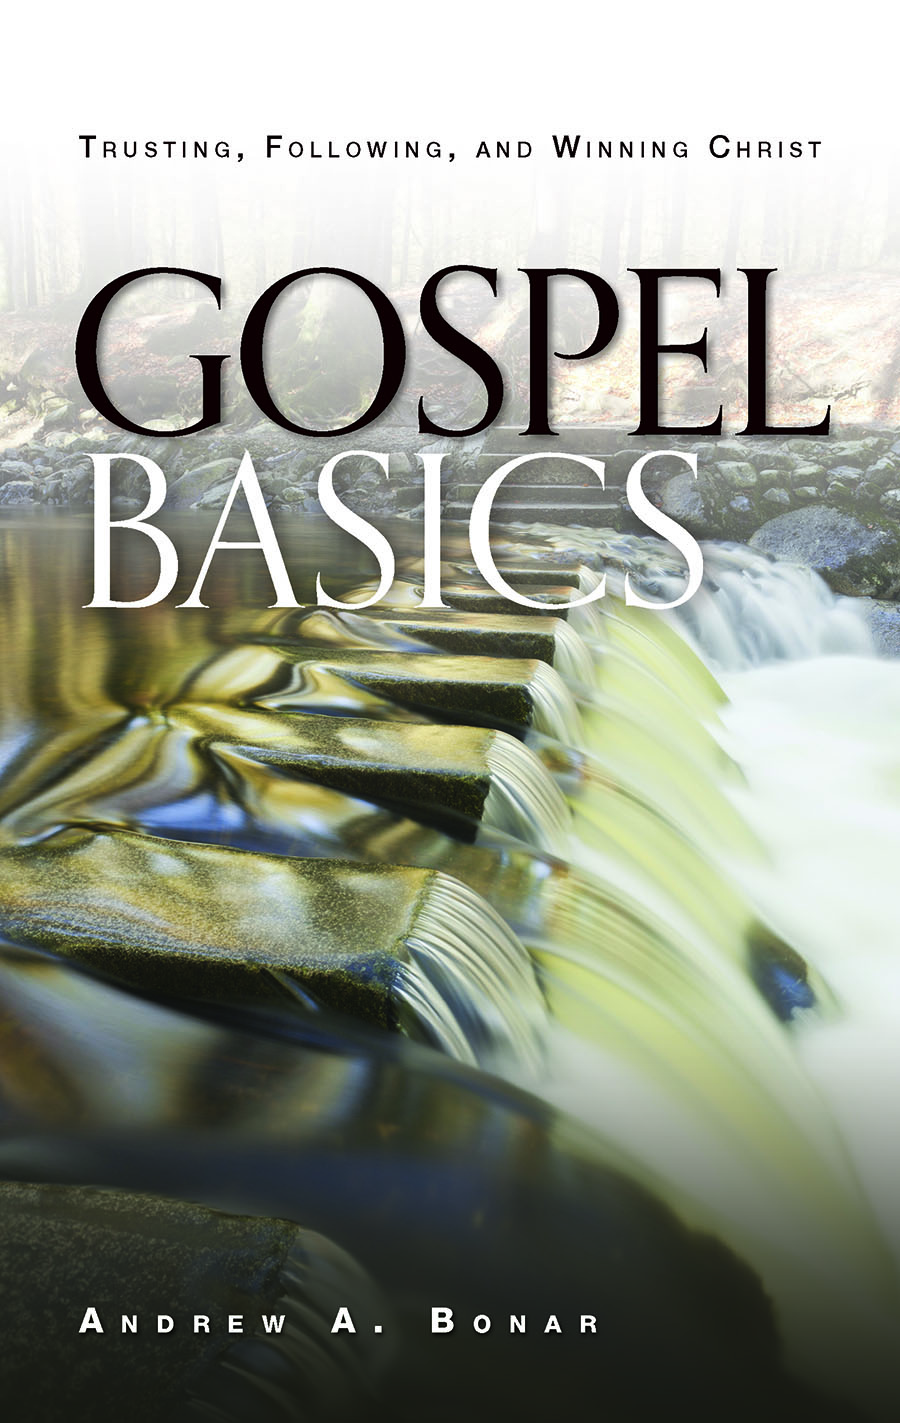 Gospel Basics